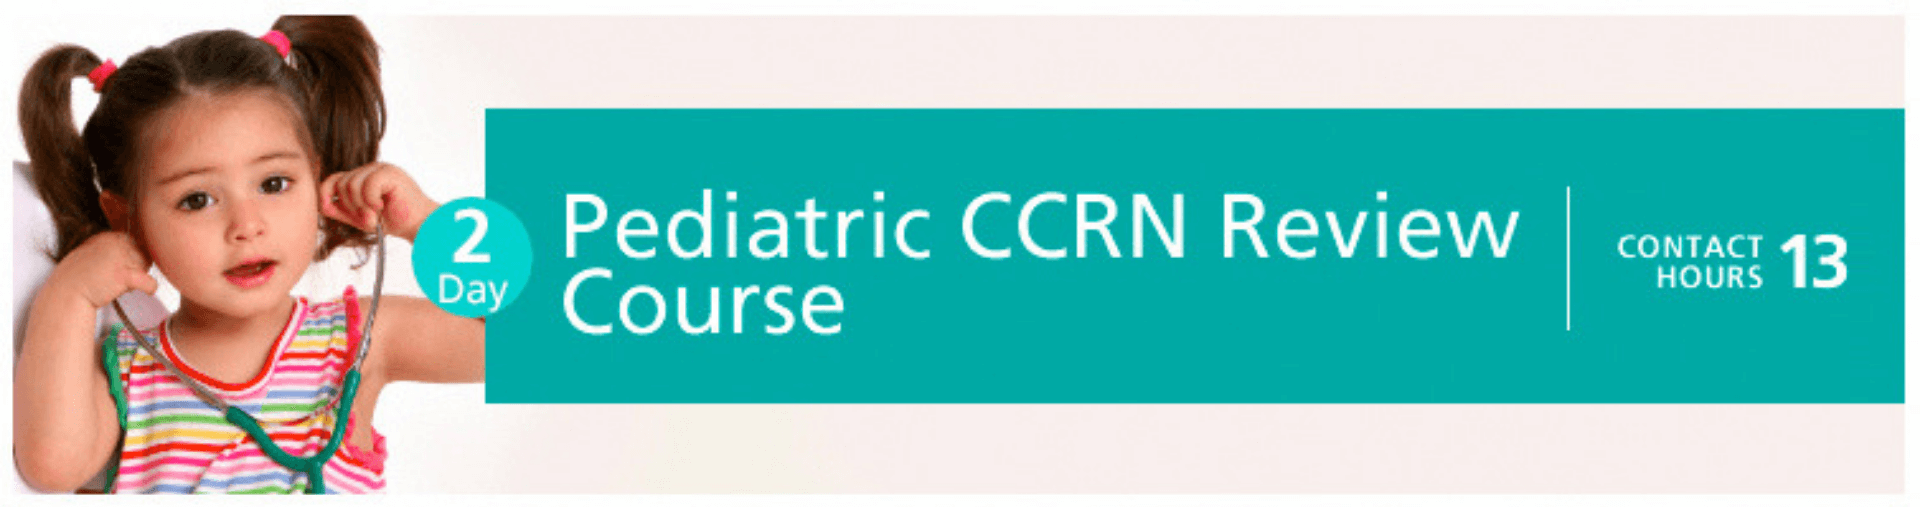 Pediatric Ccrn Review Course - Nurse Builders